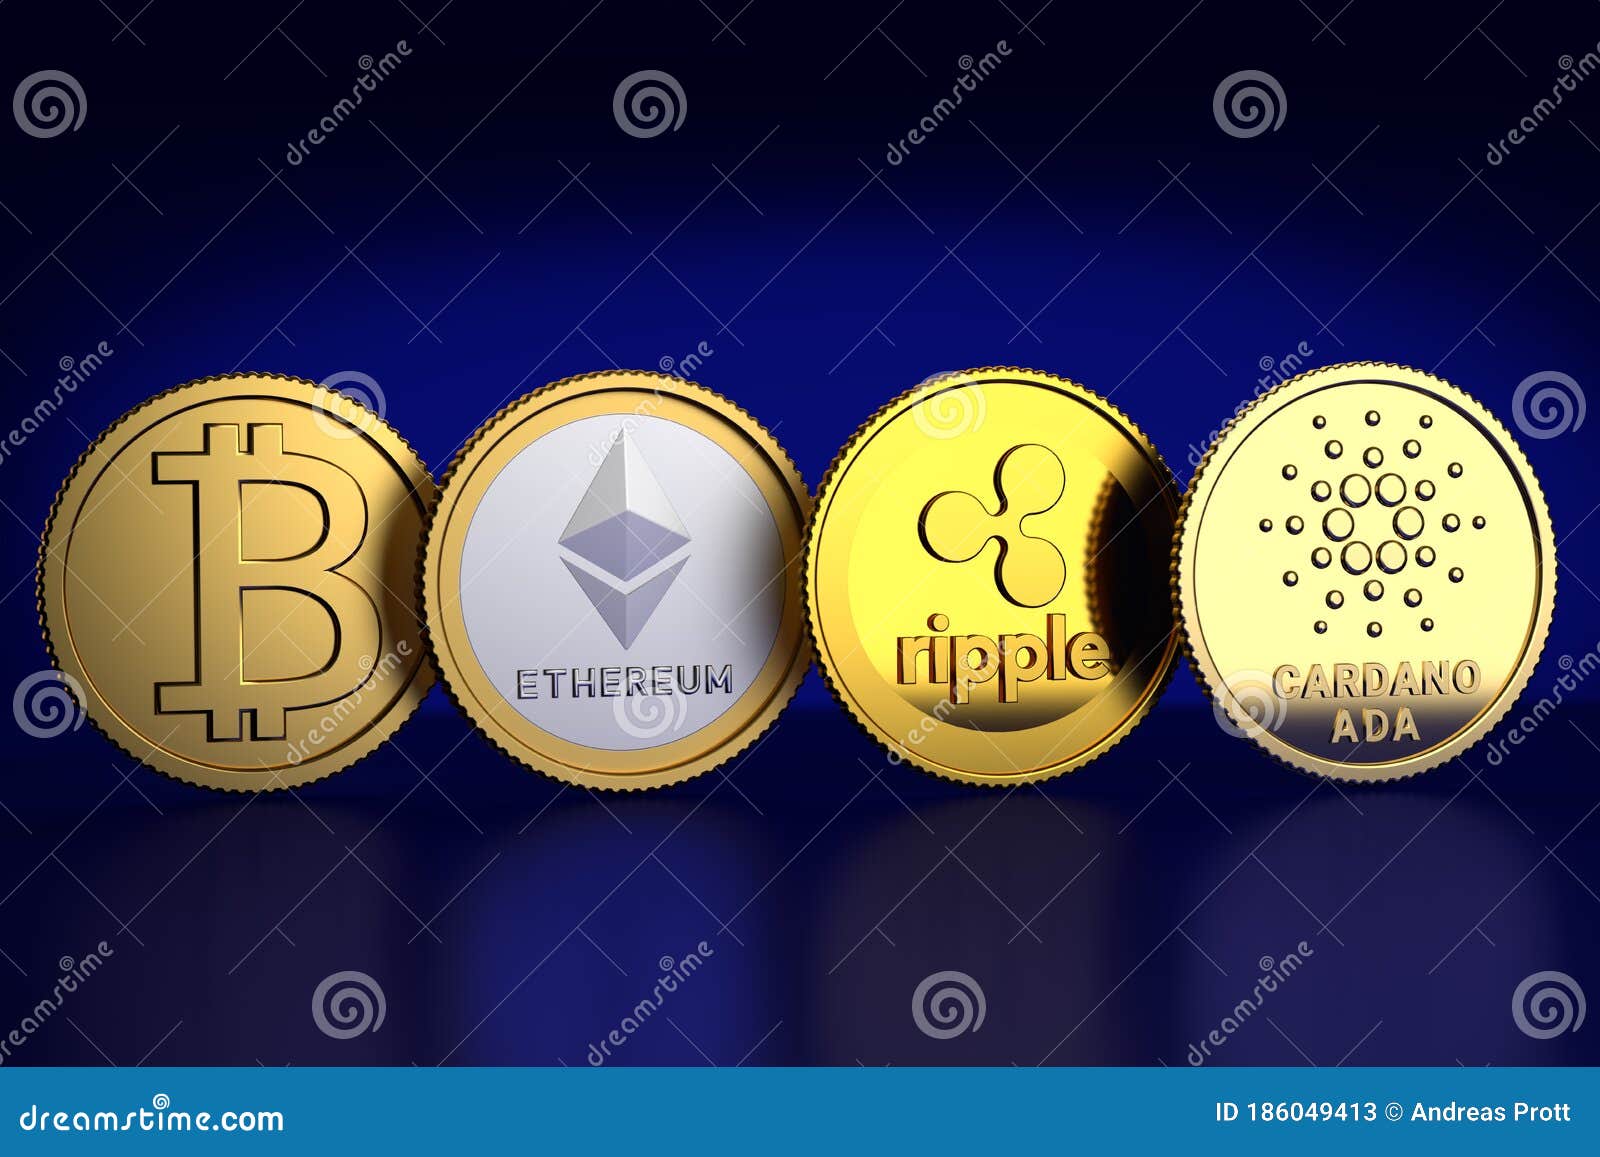 25+ Cardano Crypto Coin Market Cap Images